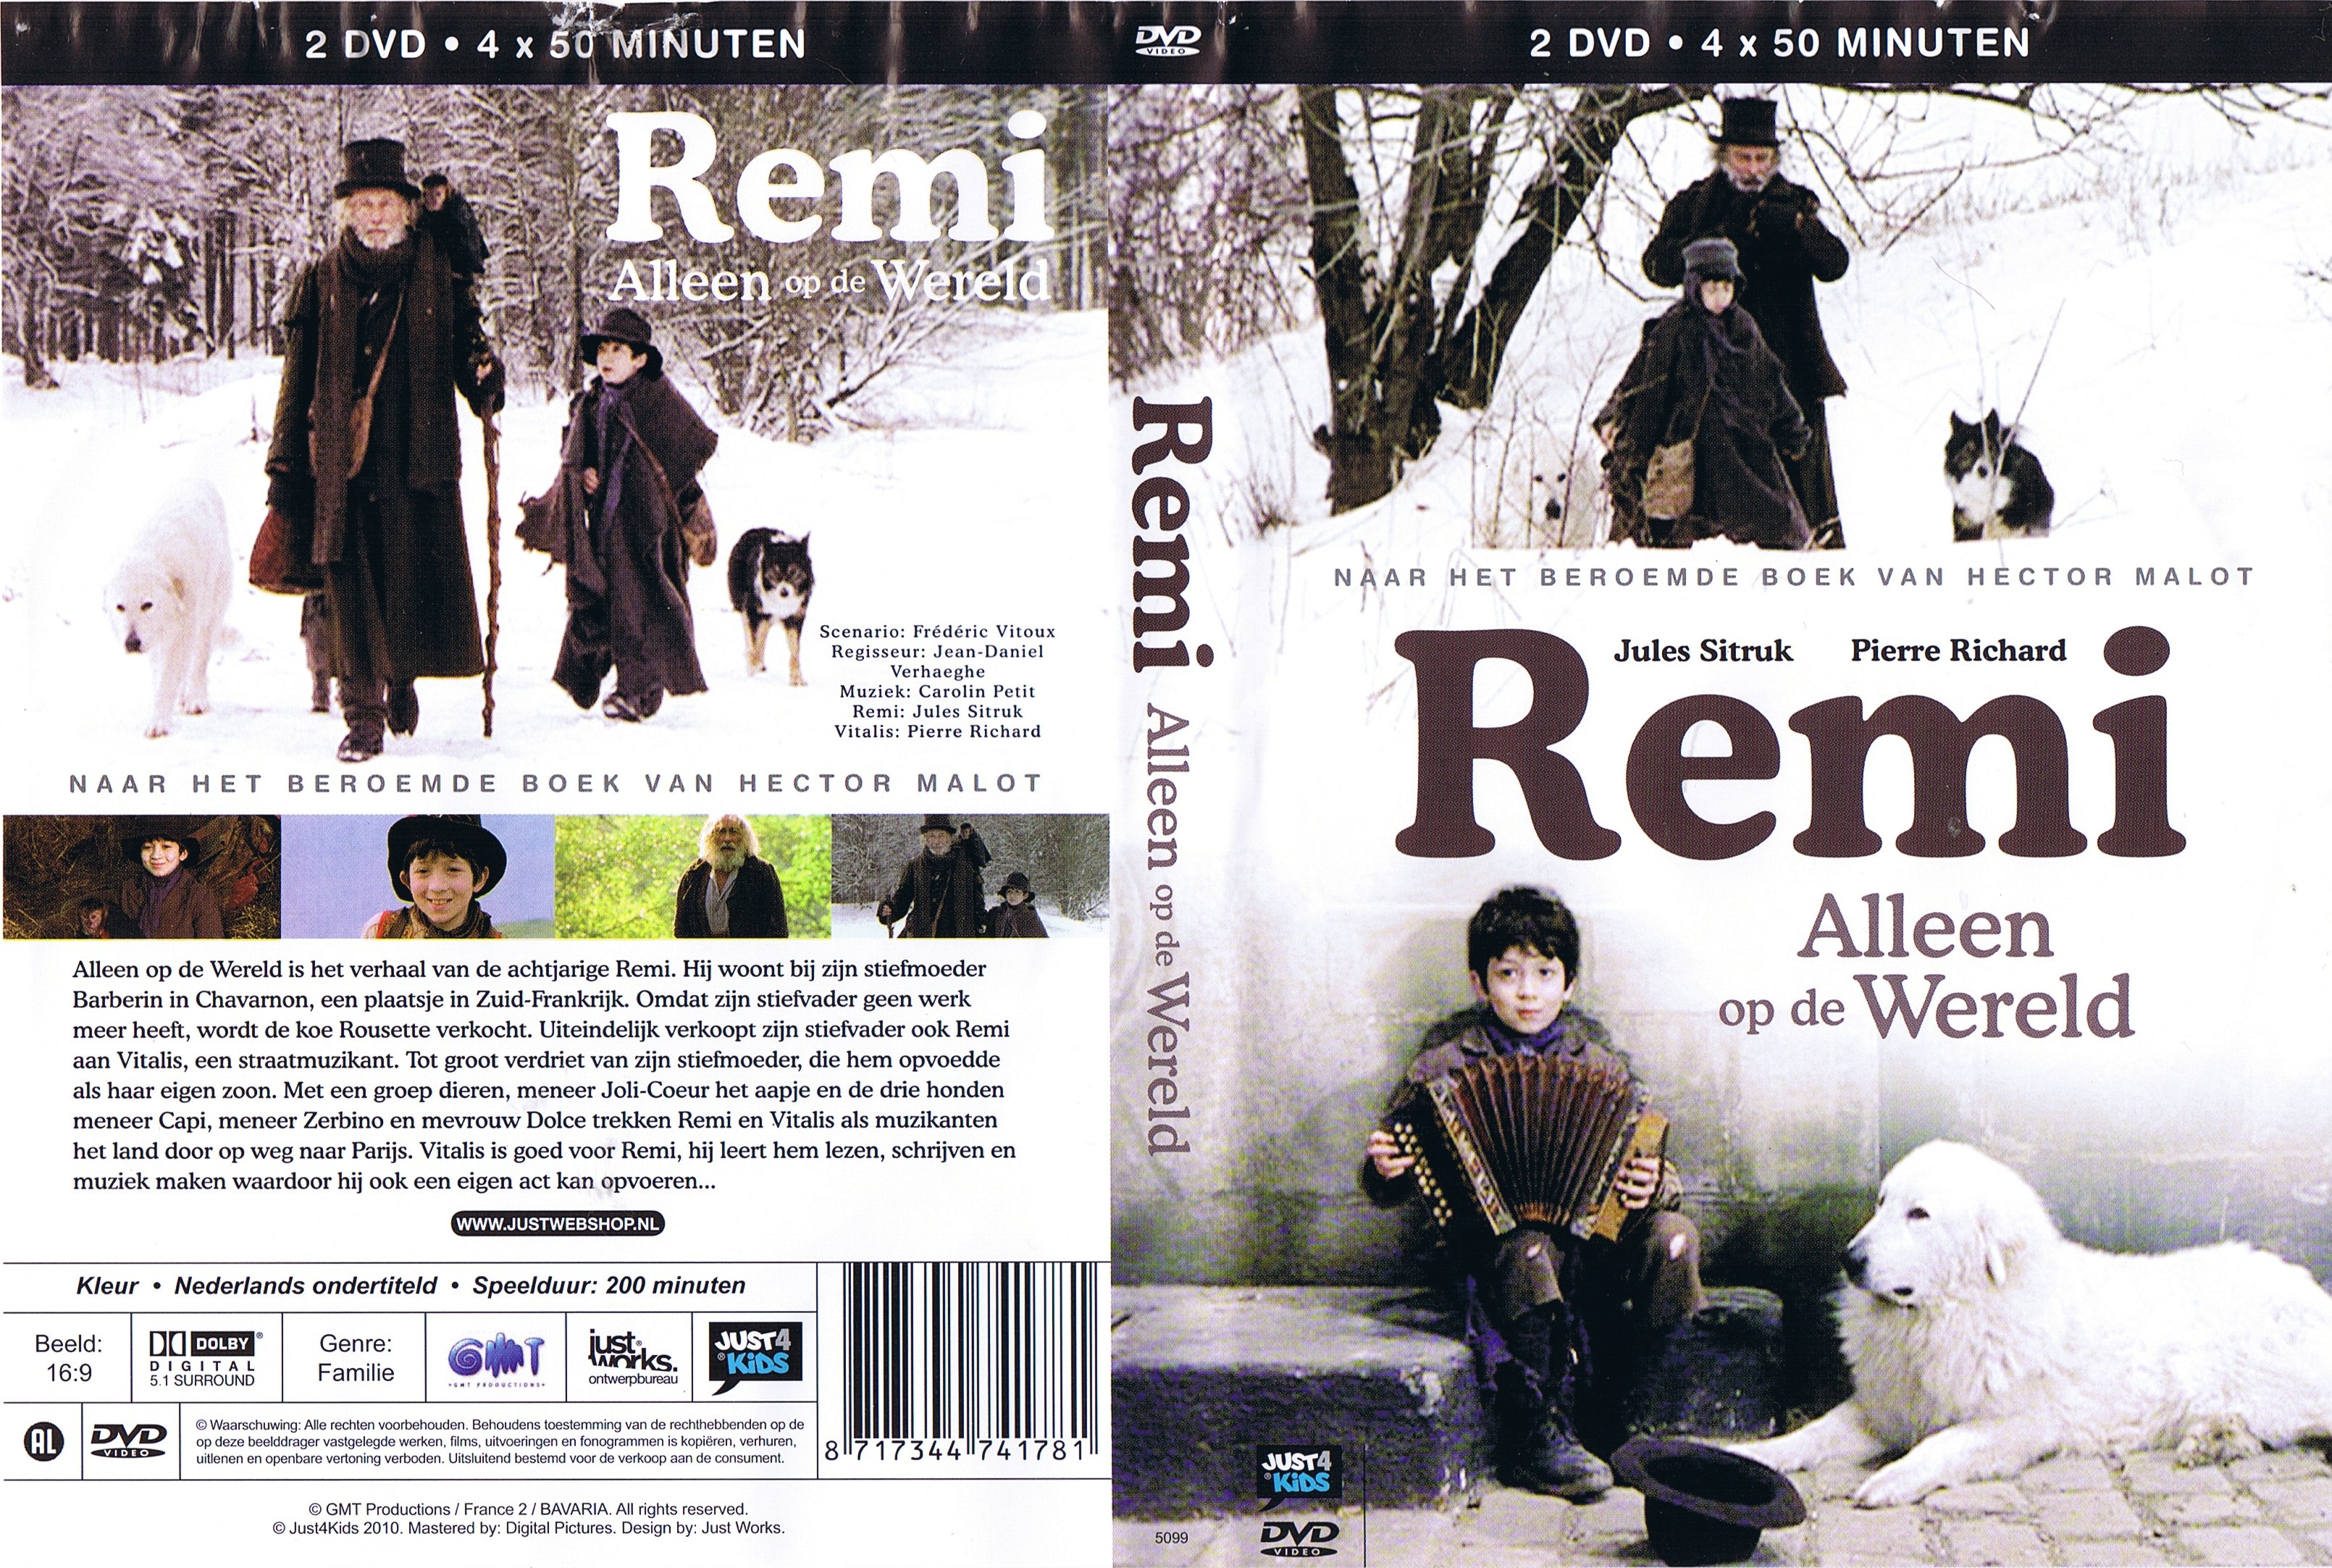 Remi - Alleen op de wereld - DVD 2 - (2000)